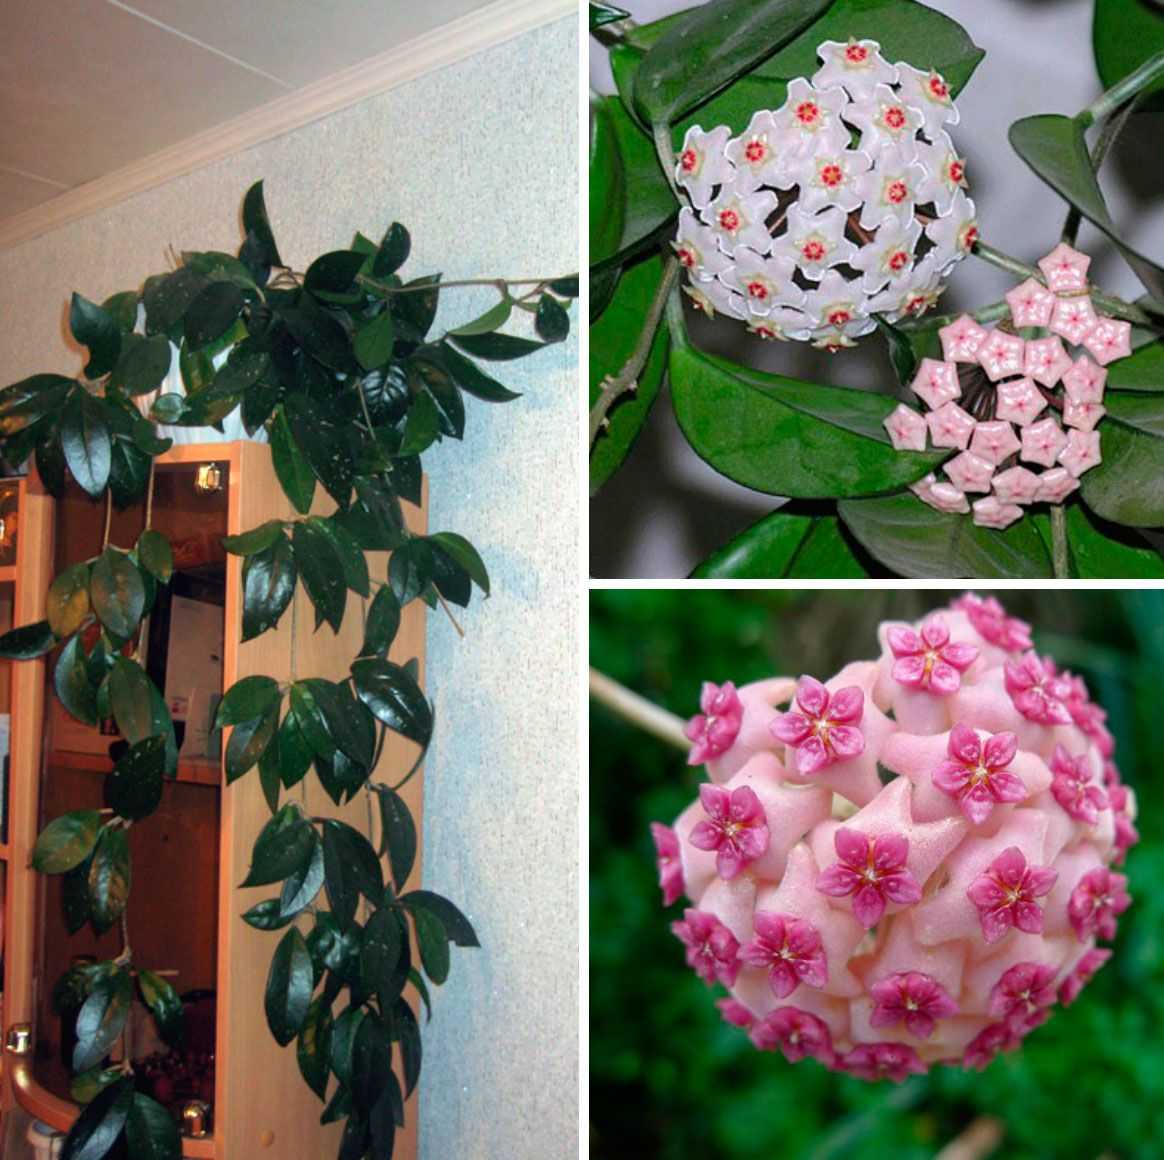 Популярные разновидности хойи для истинных поклонников экзотичных комнатных растений